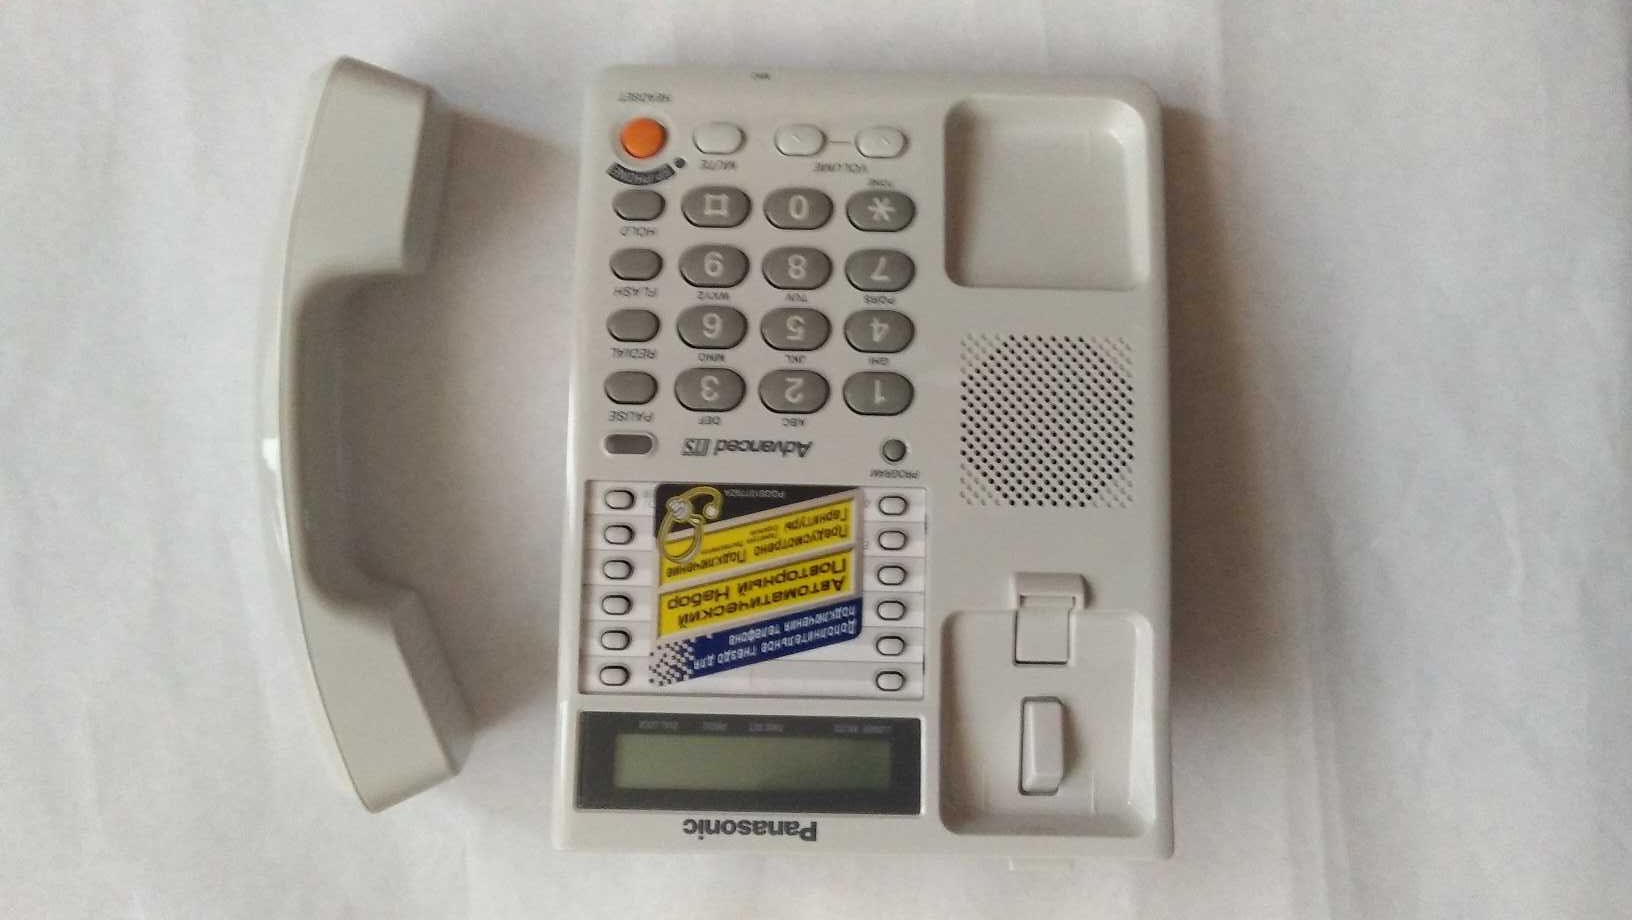 Телефон новый Panasonic KX-TS2365 стационарный